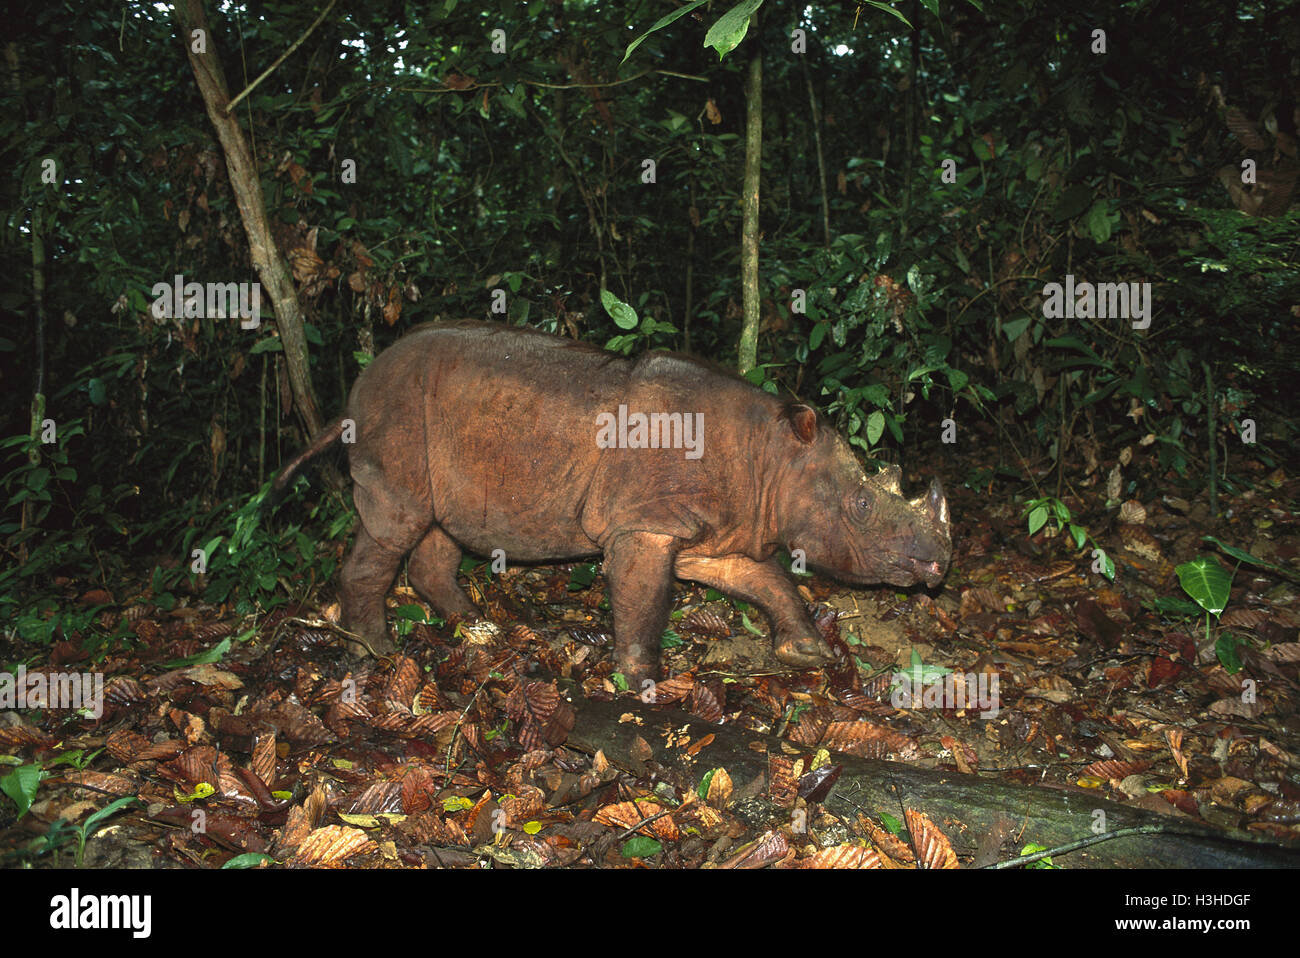 Sumatran rhinoceros (Dicerorhinus sumatrensis) Stock Photo